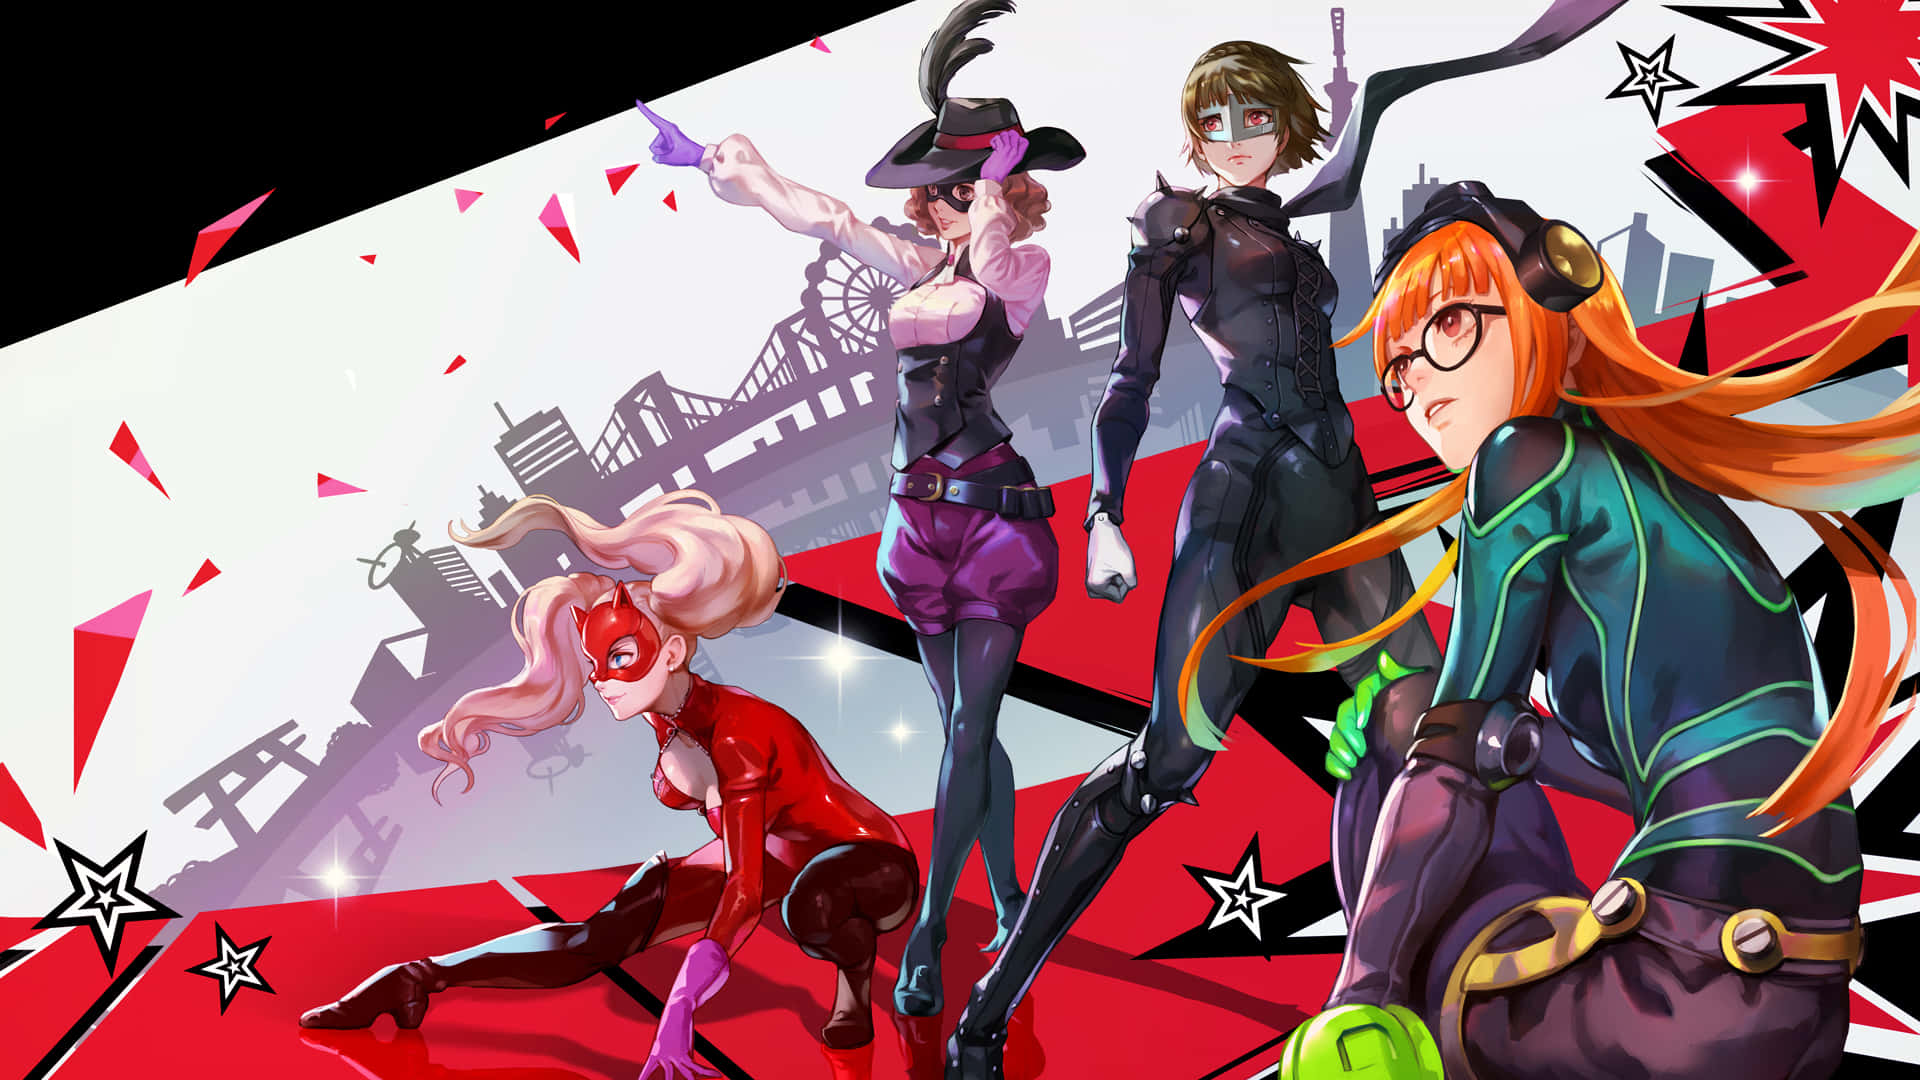 Einegruppe Von Anime-charakteren Auf Einem Roten Und Schwarzen Hintergrund.